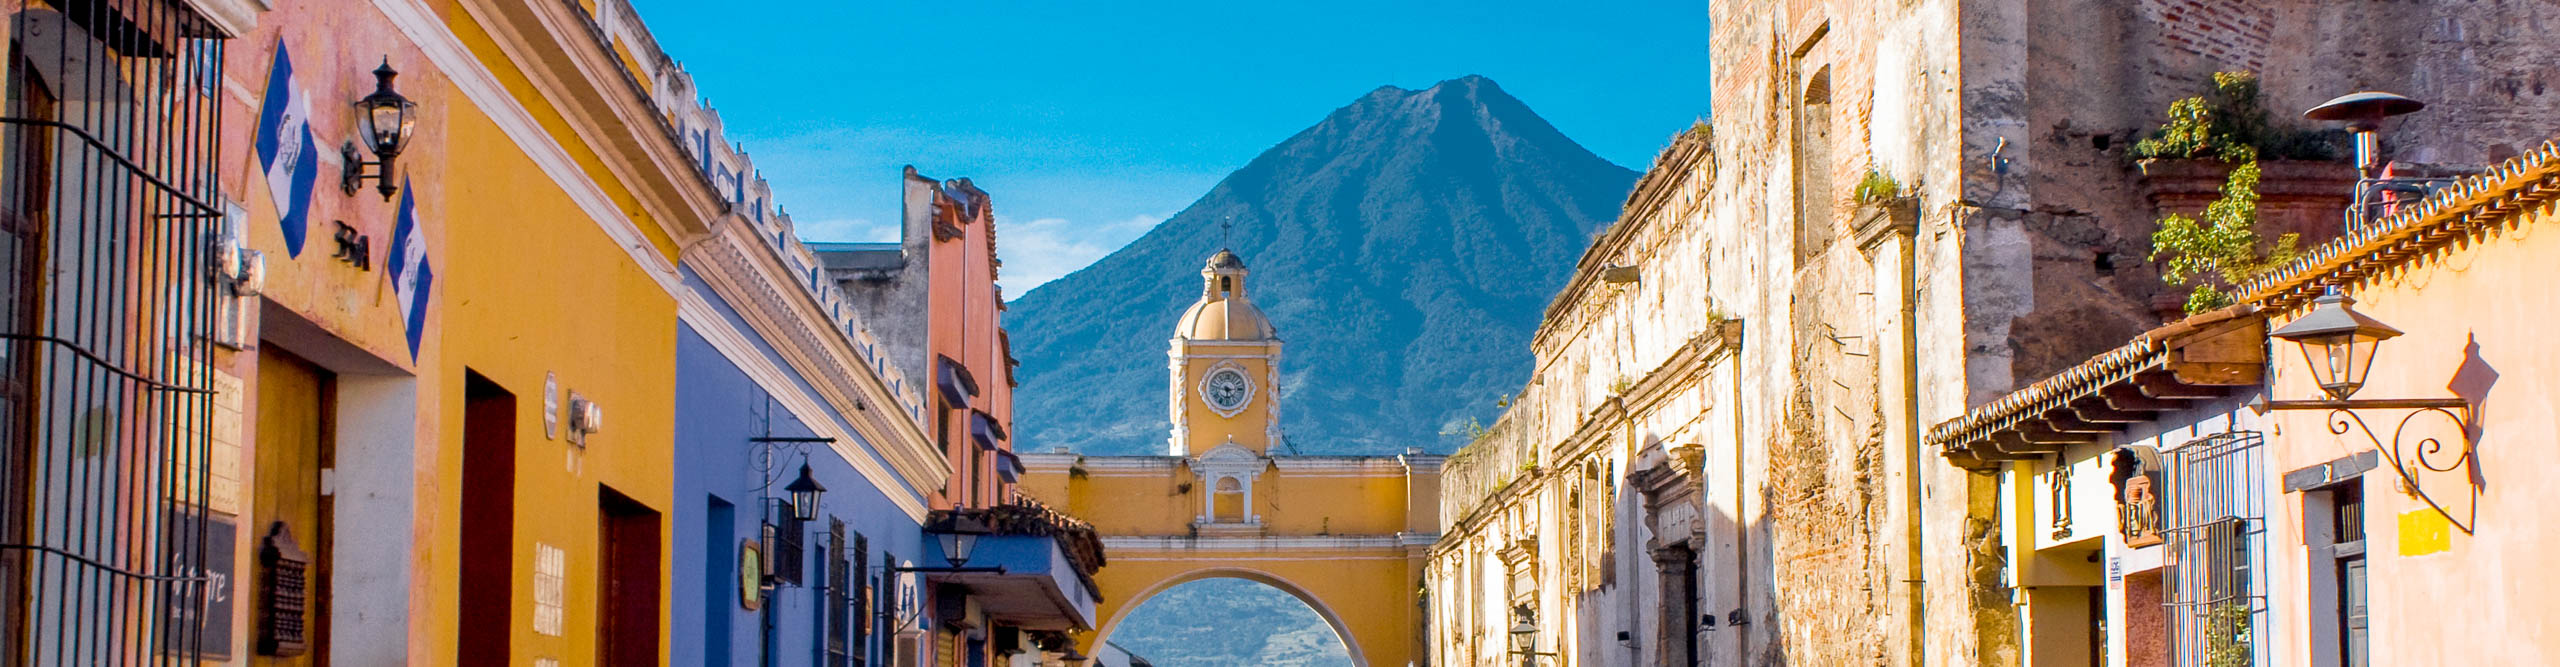 The colourful city of Antigua, Guatemala